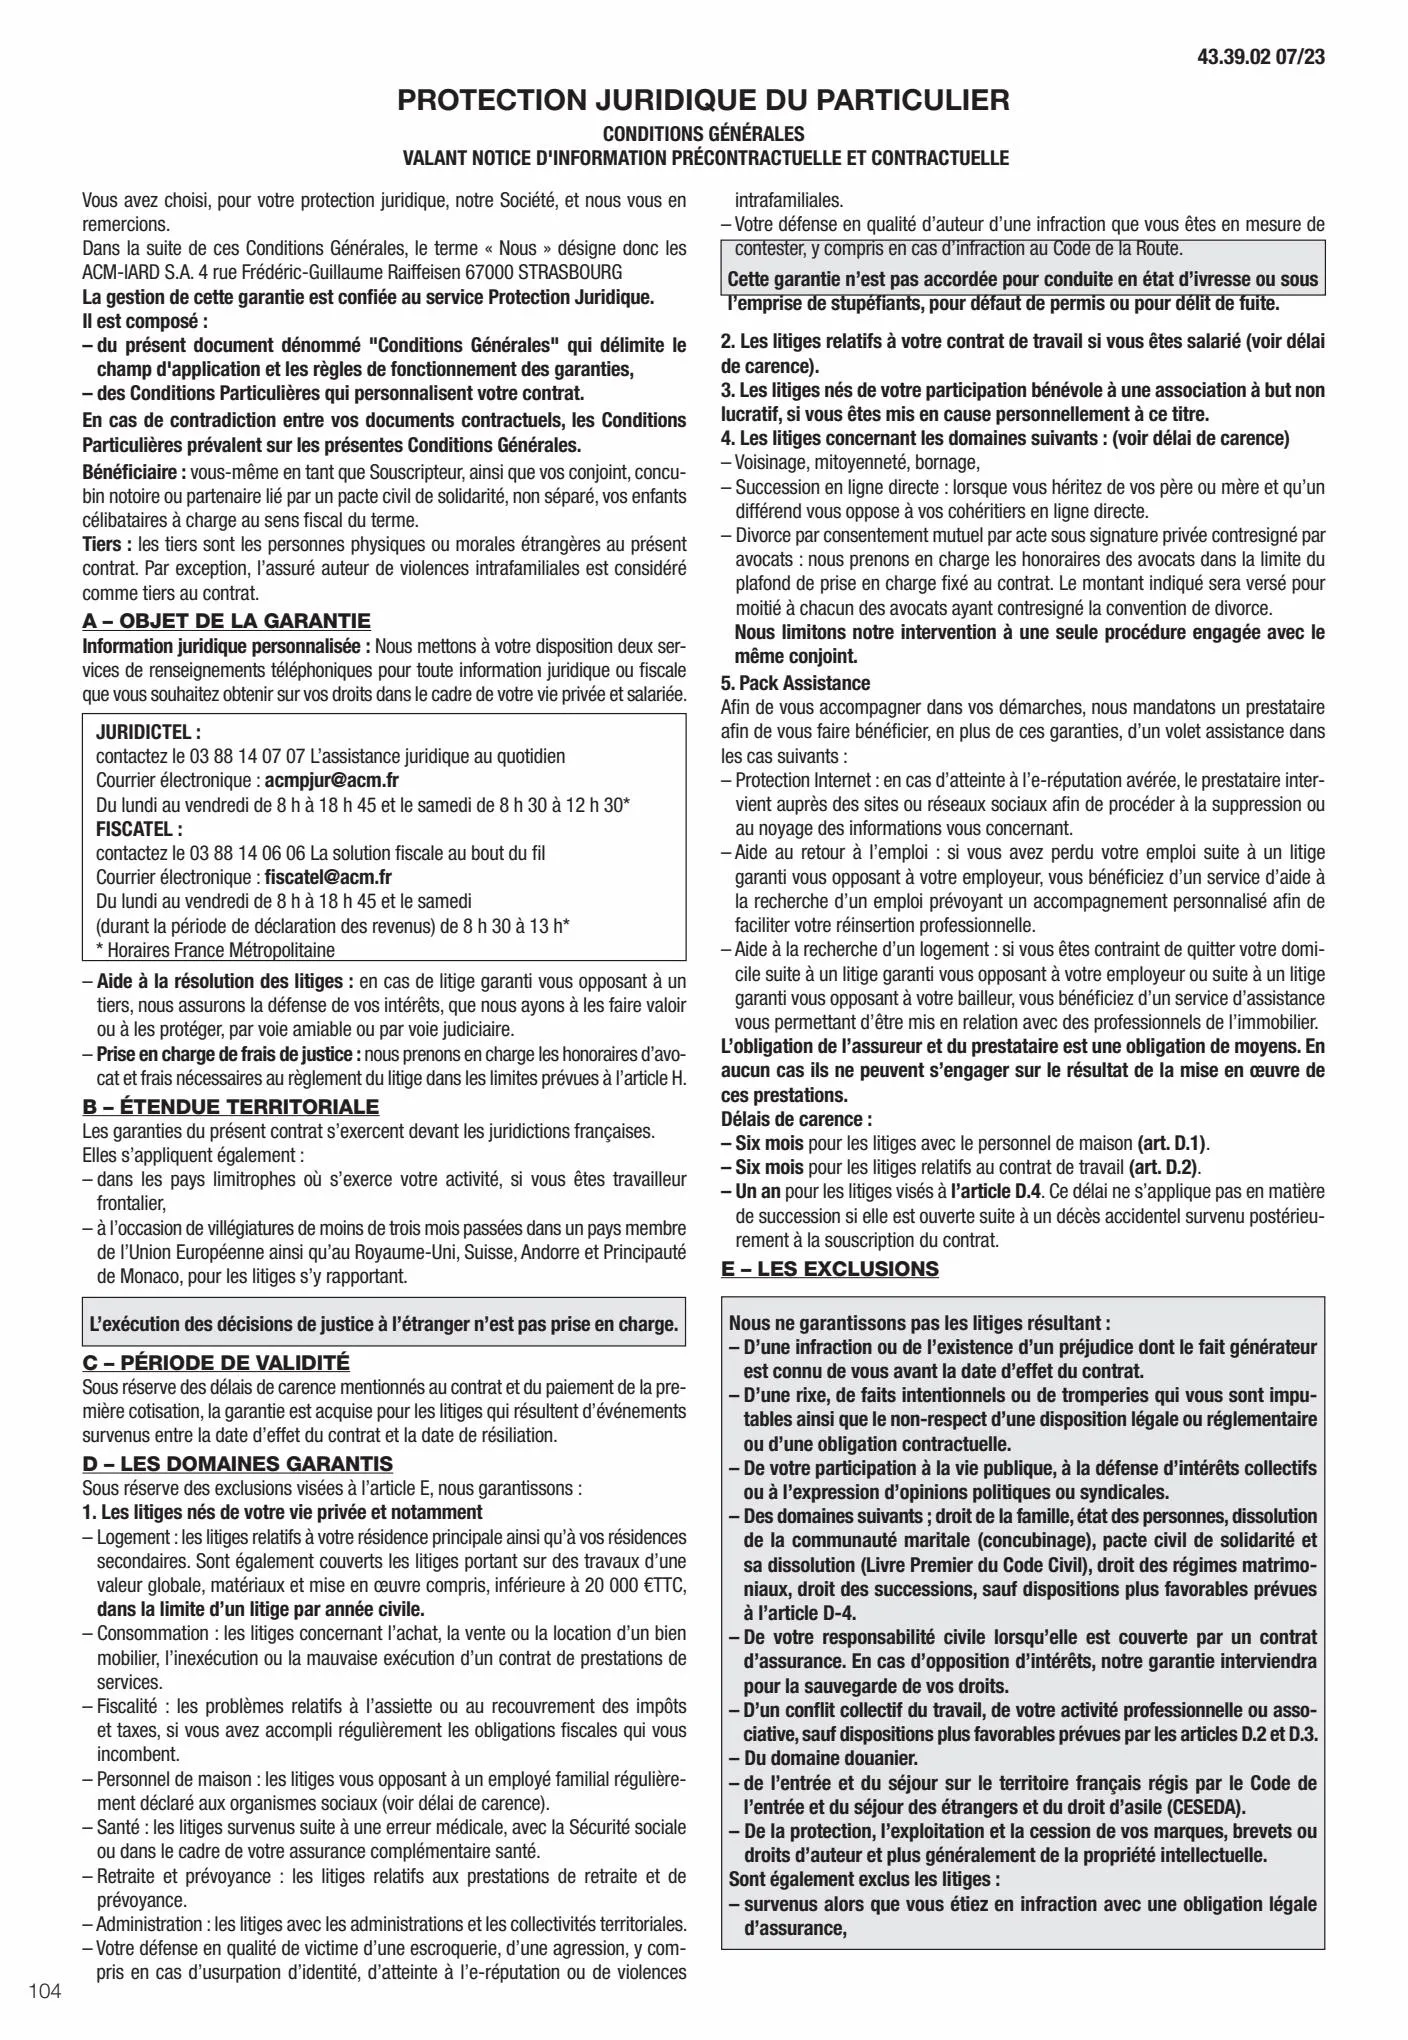 Catalogue Conditions générales Particuliers, page 00106